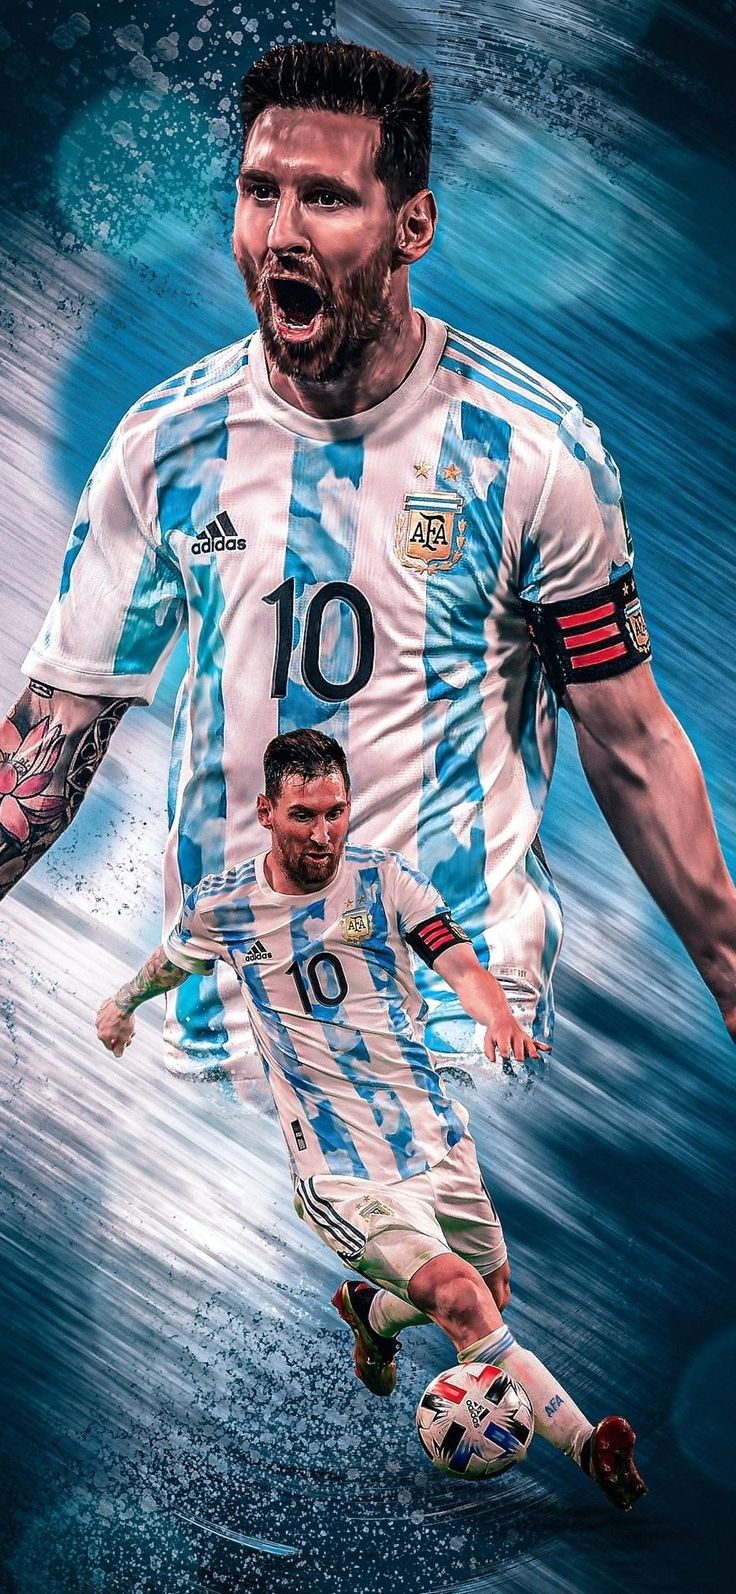 Bạn yêu thích Lionel Messi và đội tuyển Argentina? Hãy xem bộ sưu tập hình nền độc đáo “Messi 2022 Argentina Wallpaper” để chuẩn bị đón chào sự kiện bóng đá lớn nhất năm